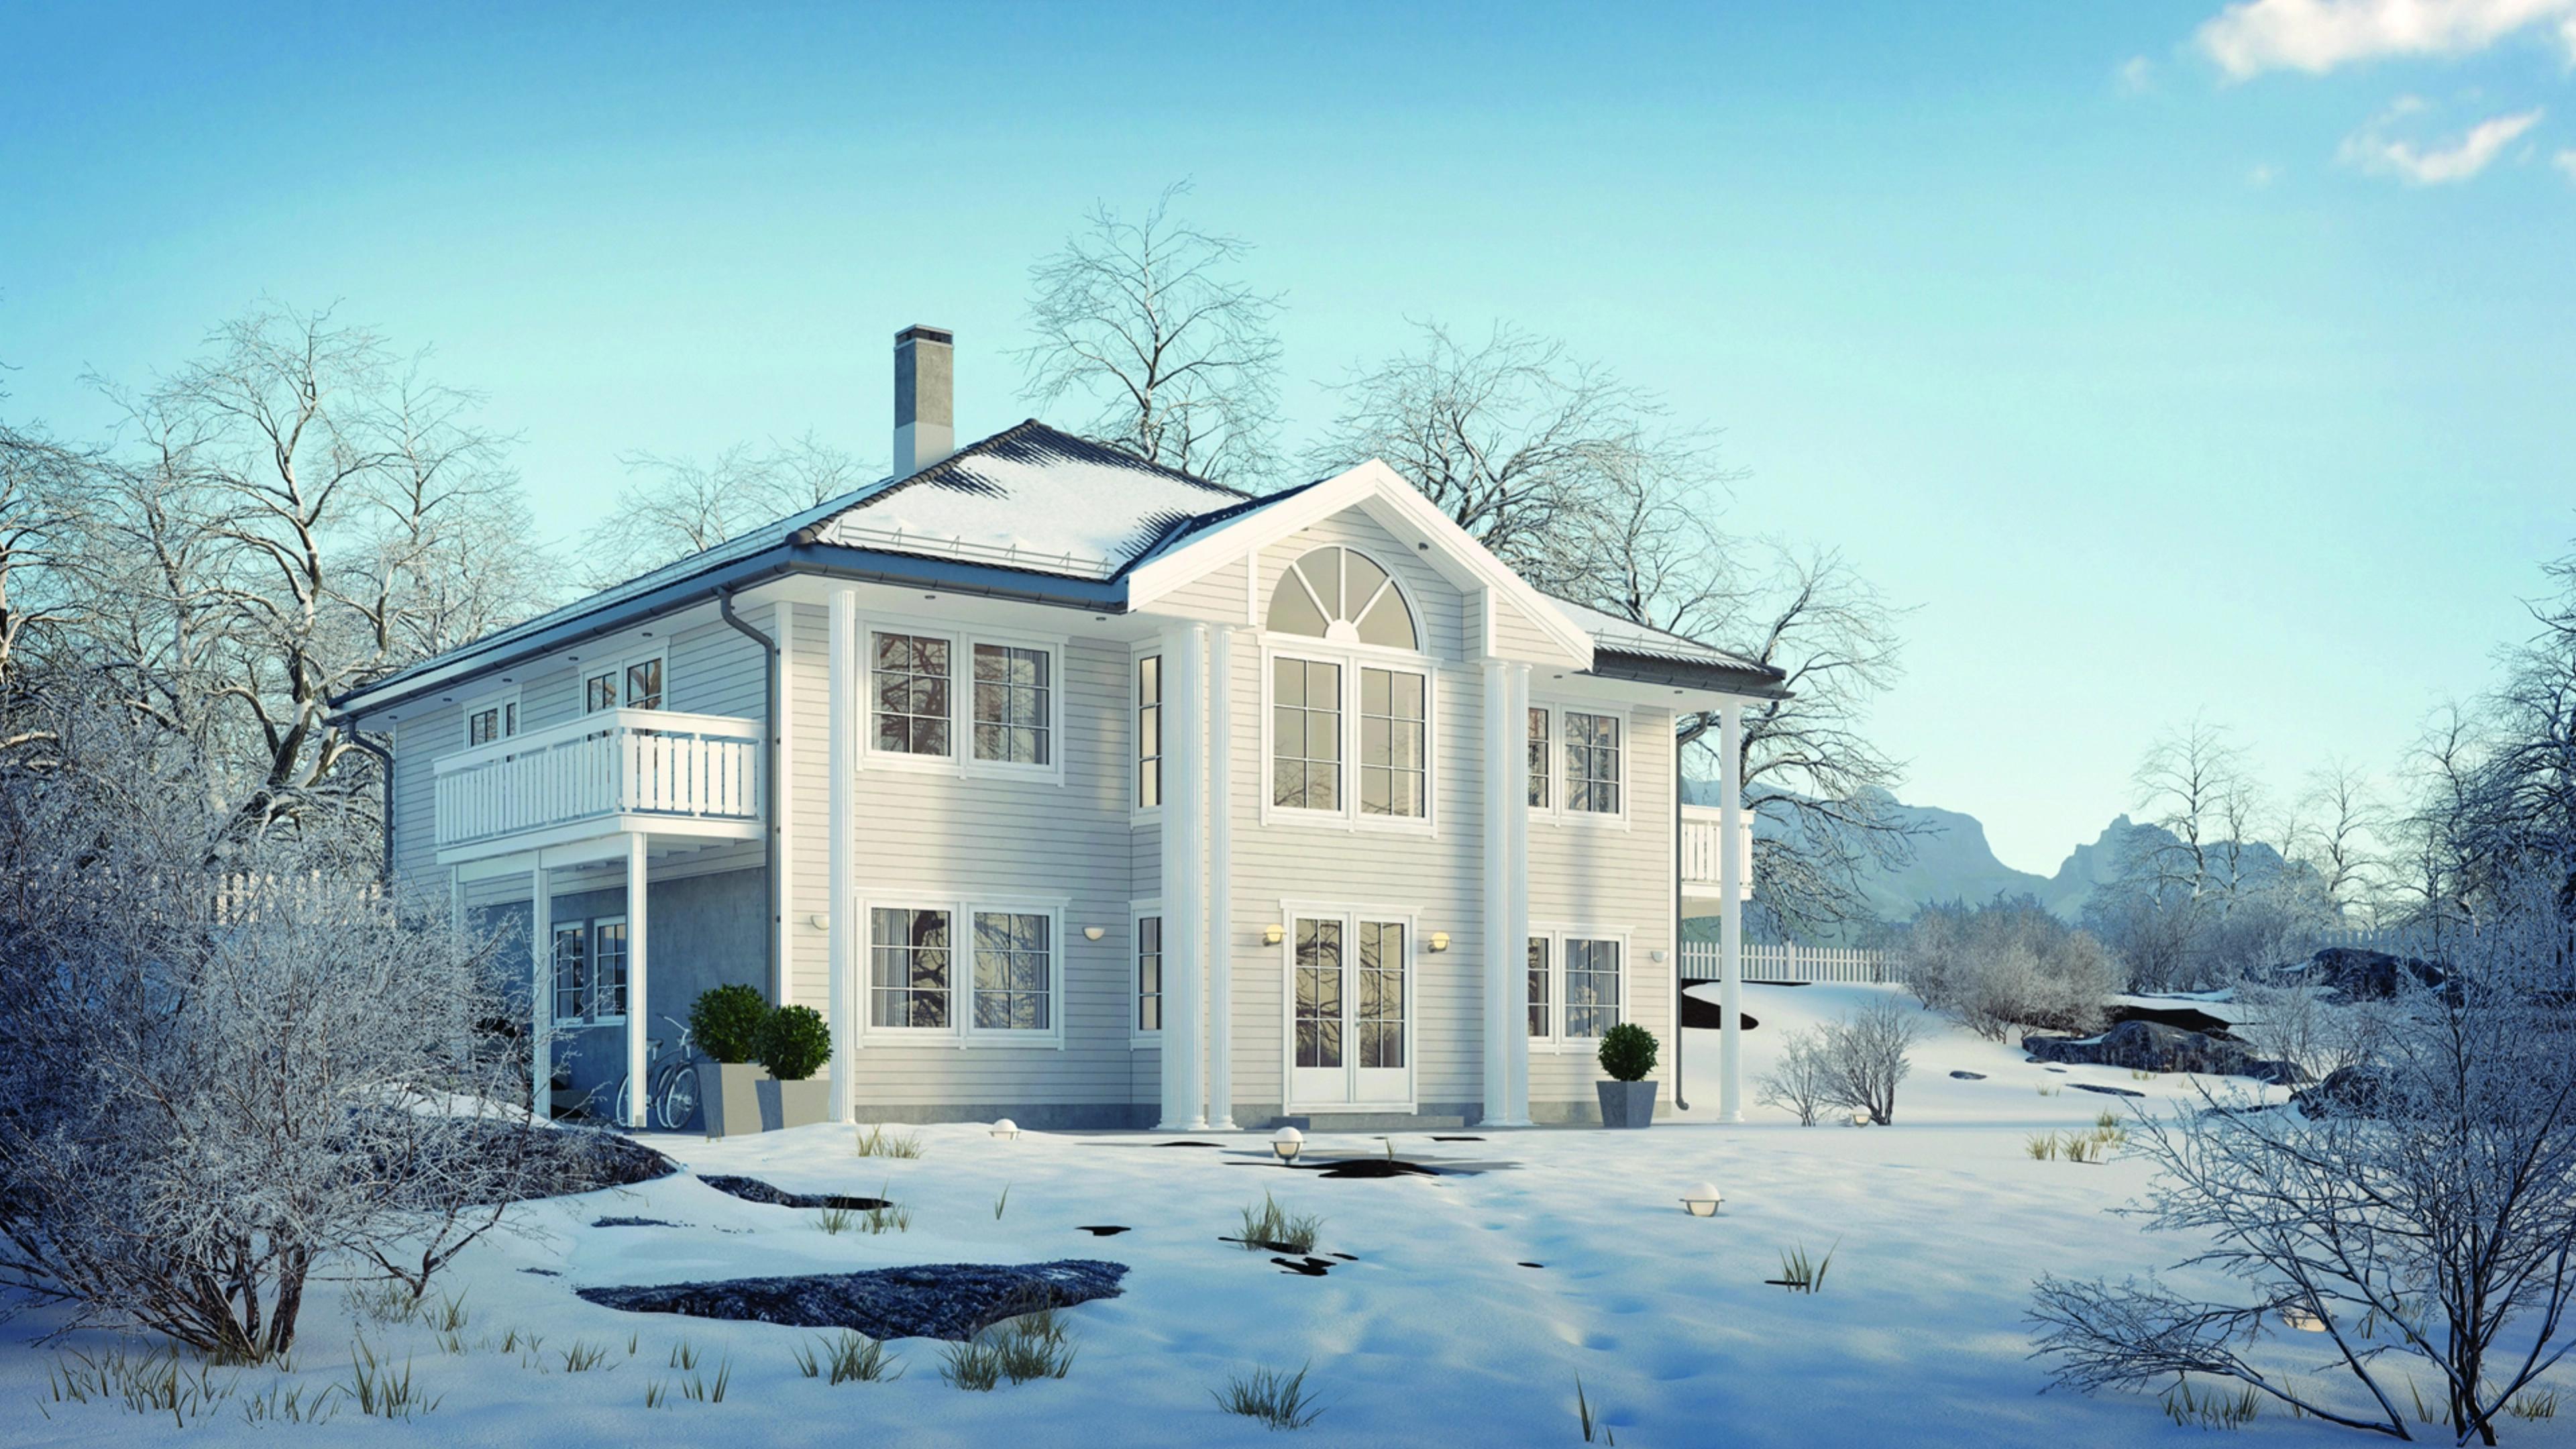 Stort herskapelig hus i vinterdrakt stor hage med snø